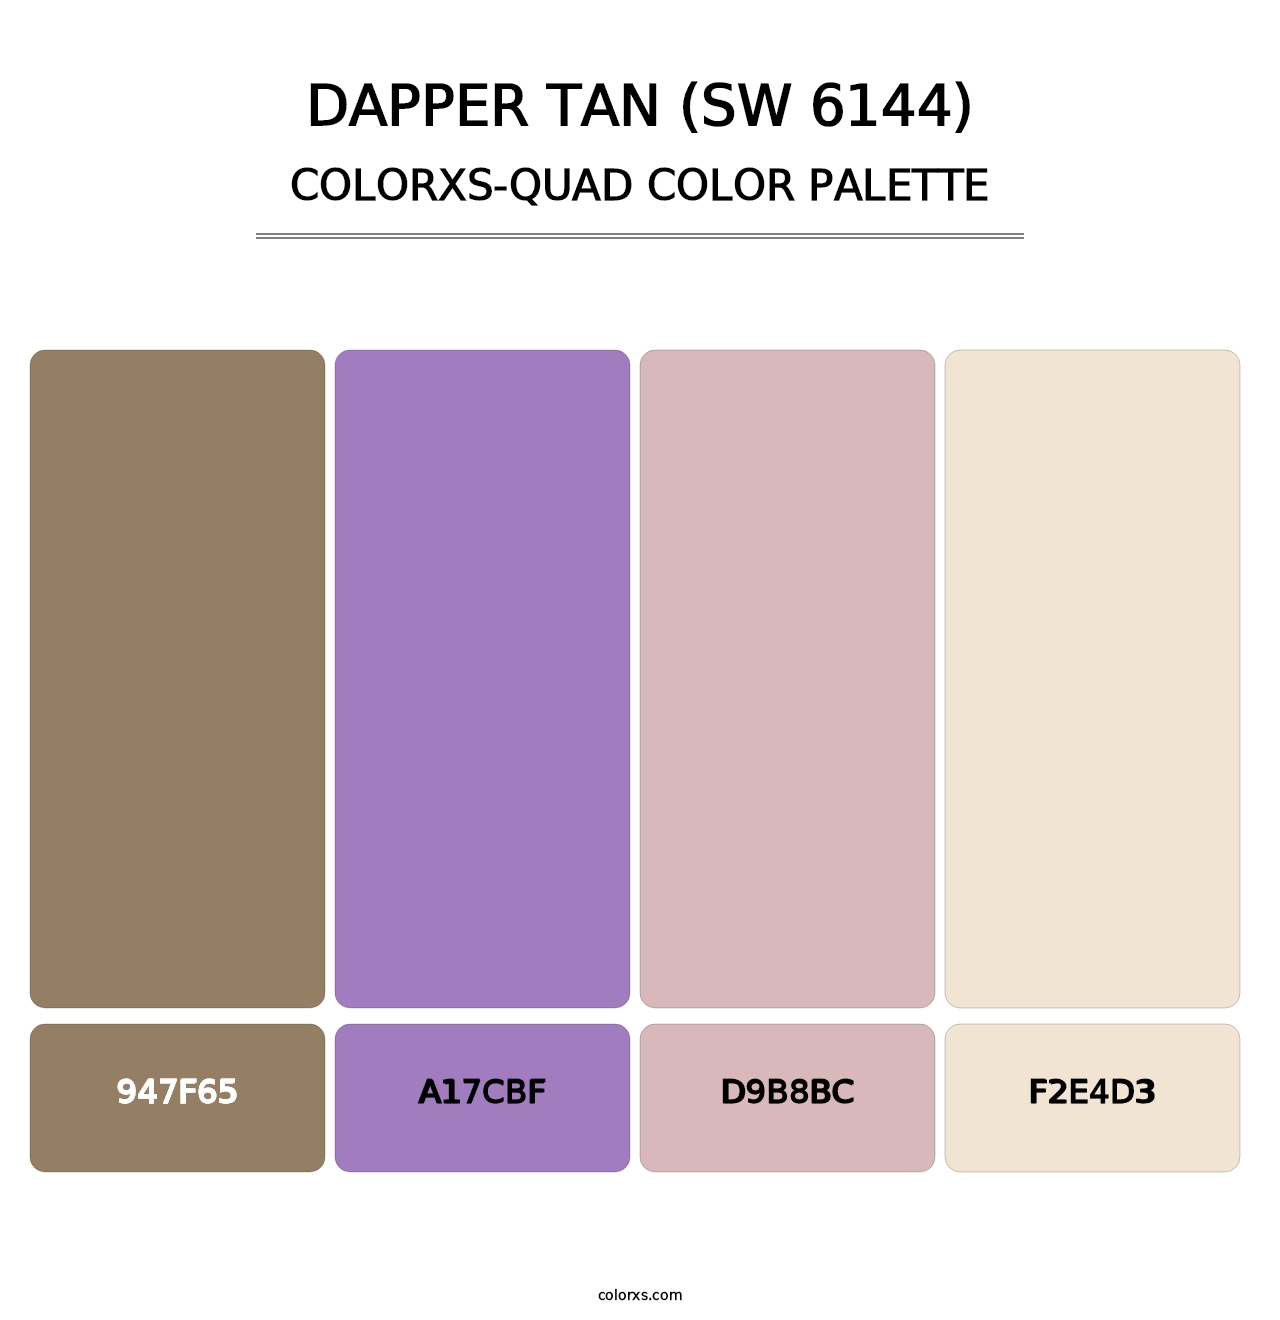 Dapper Tan (SW 6144) - Colorxs Quad Palette